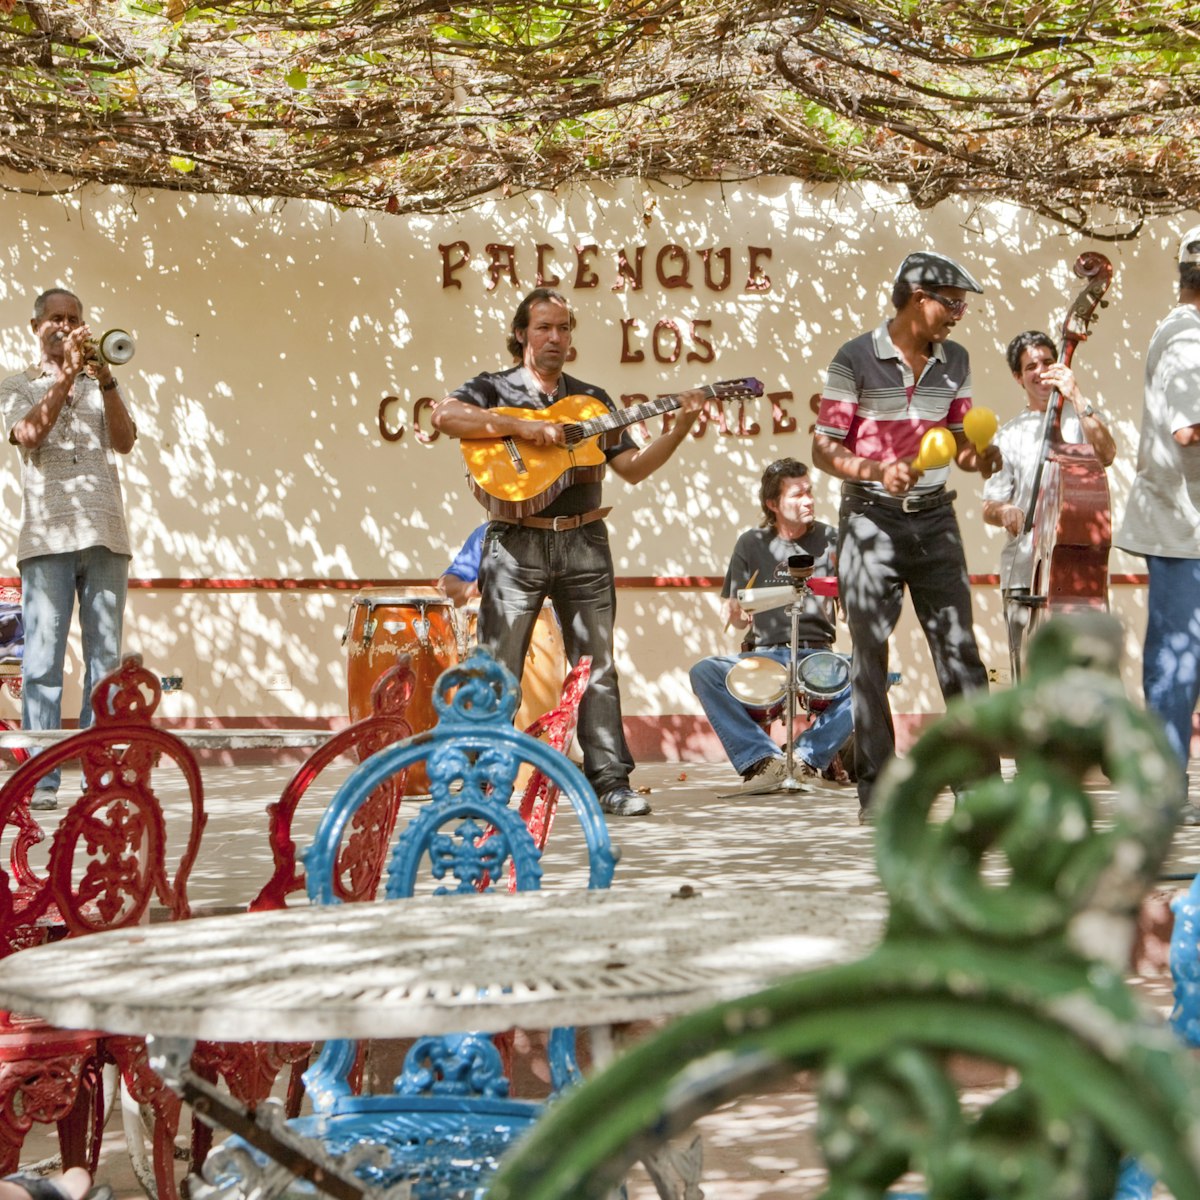 Live music at Palenque de los Congos Reales Bar.